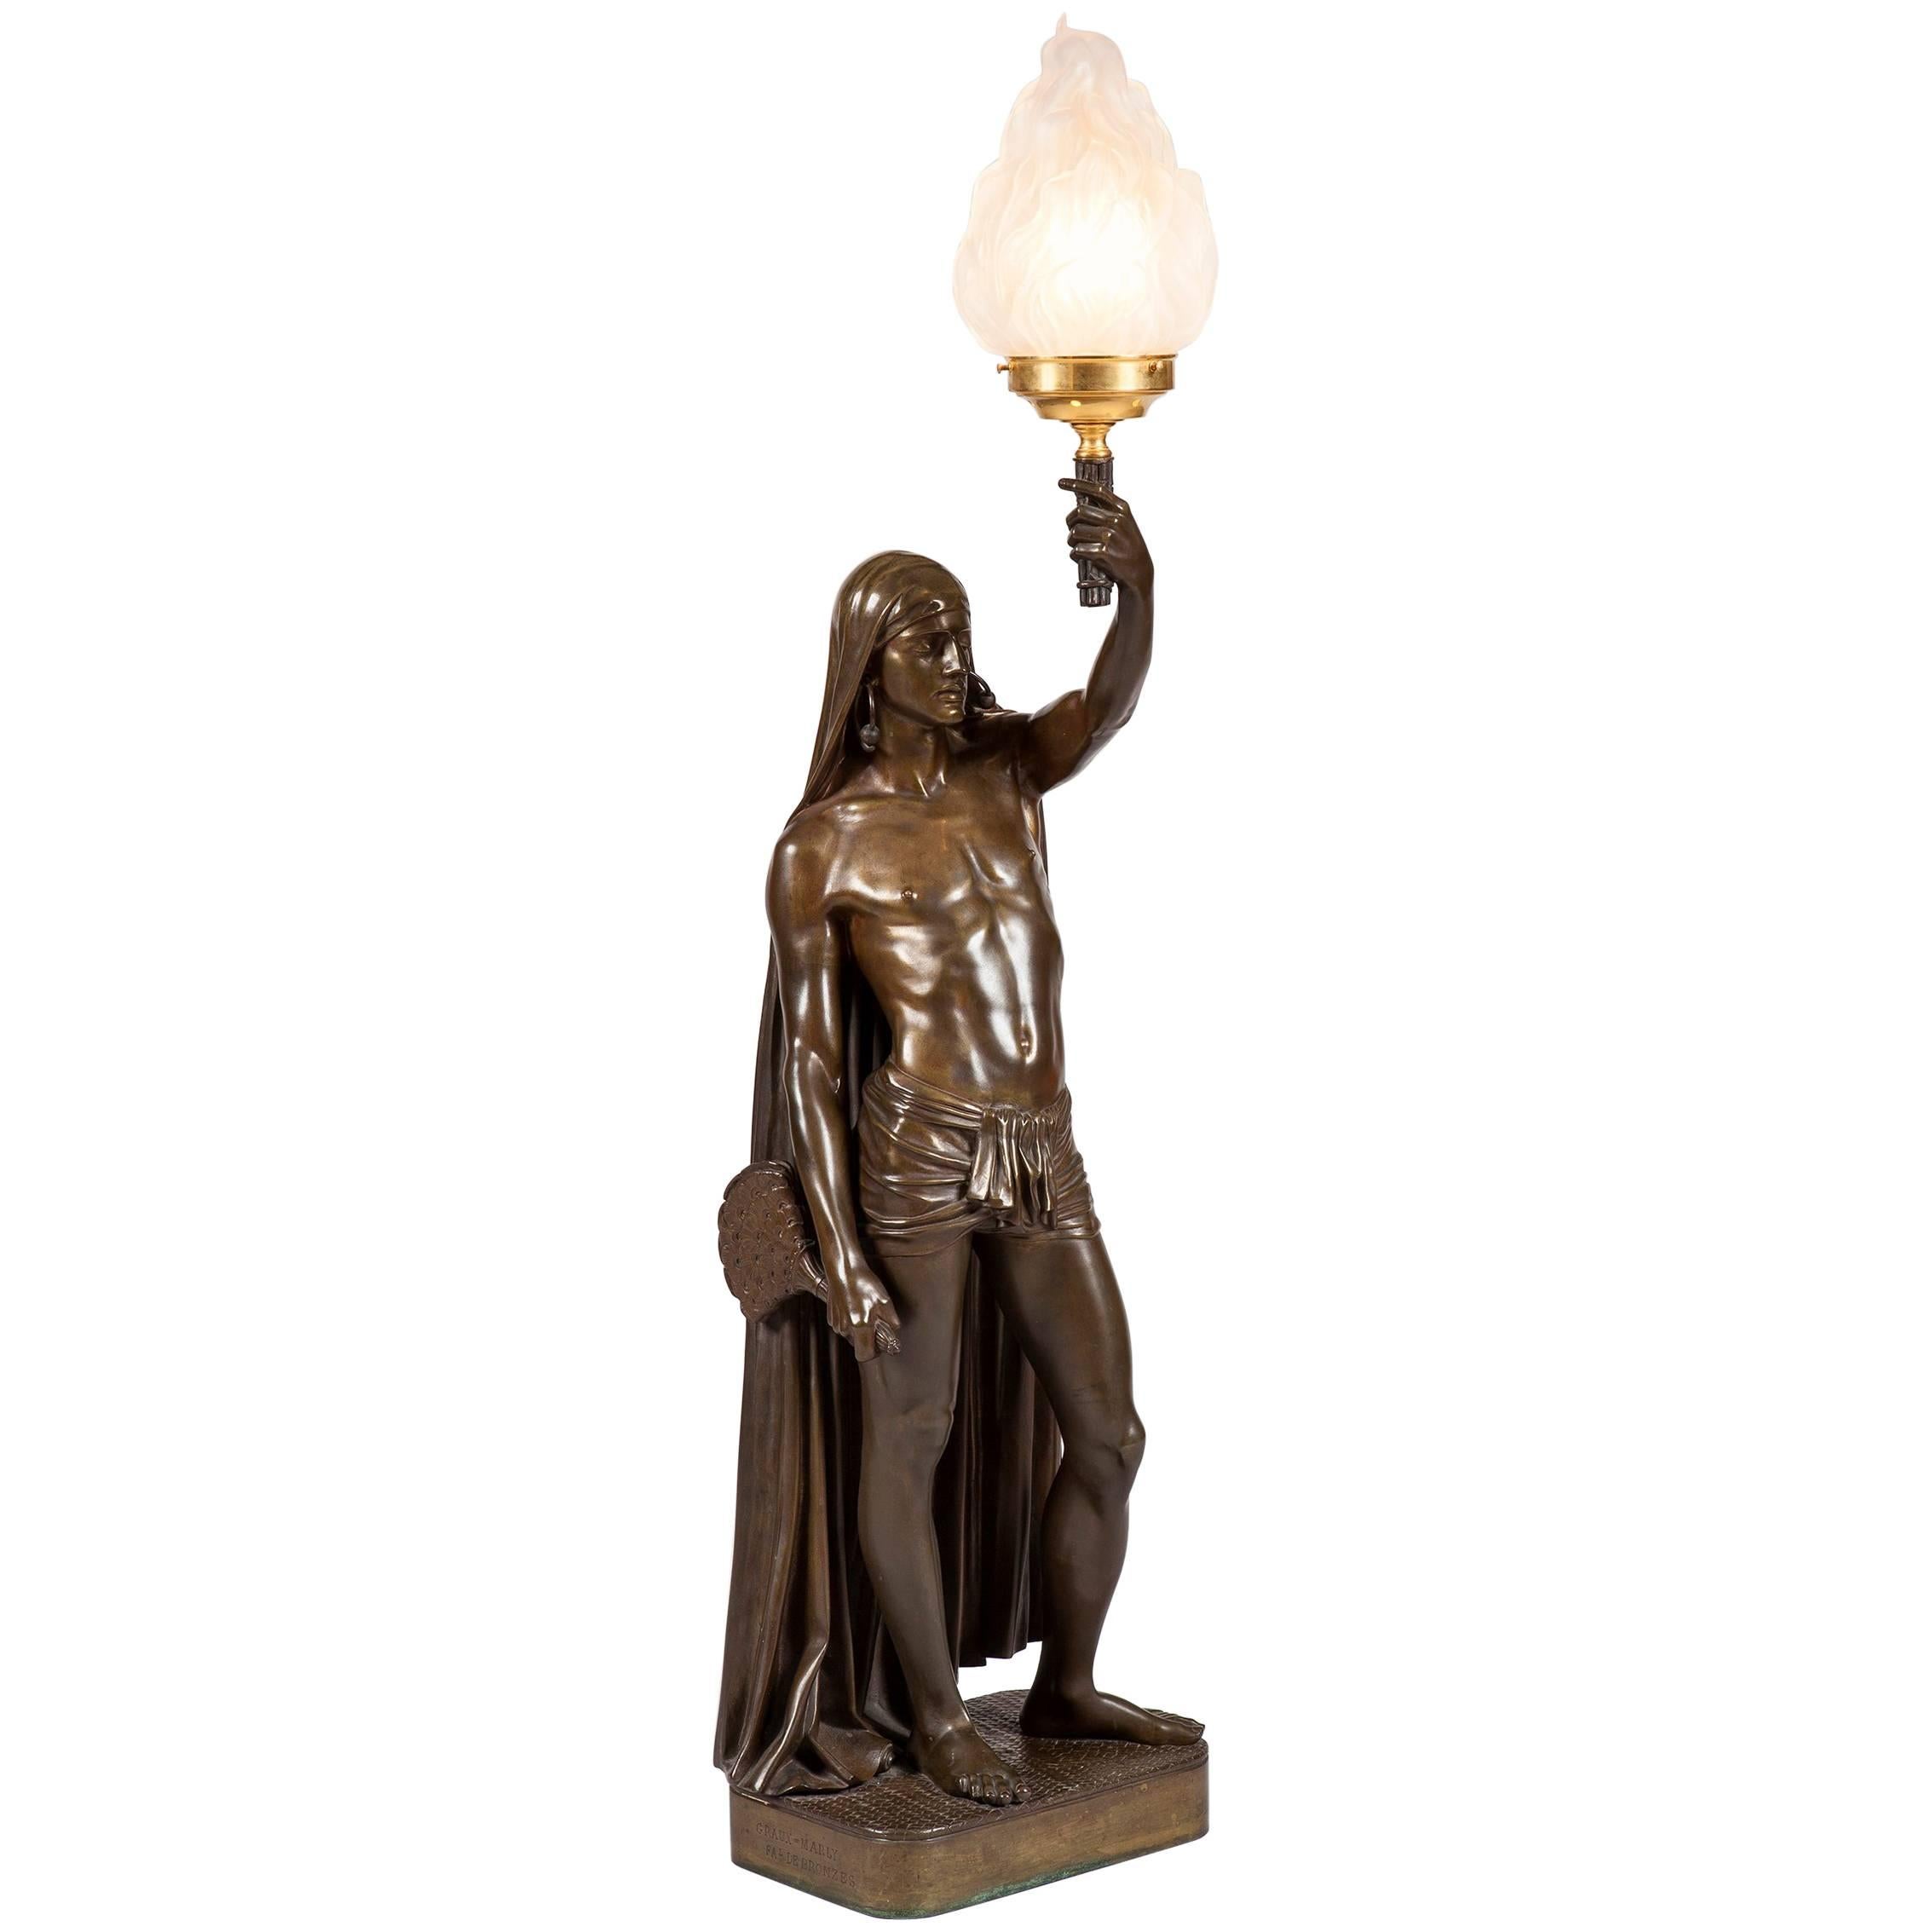 Lampe française du 19e siècle représentant une figure indienne masculine